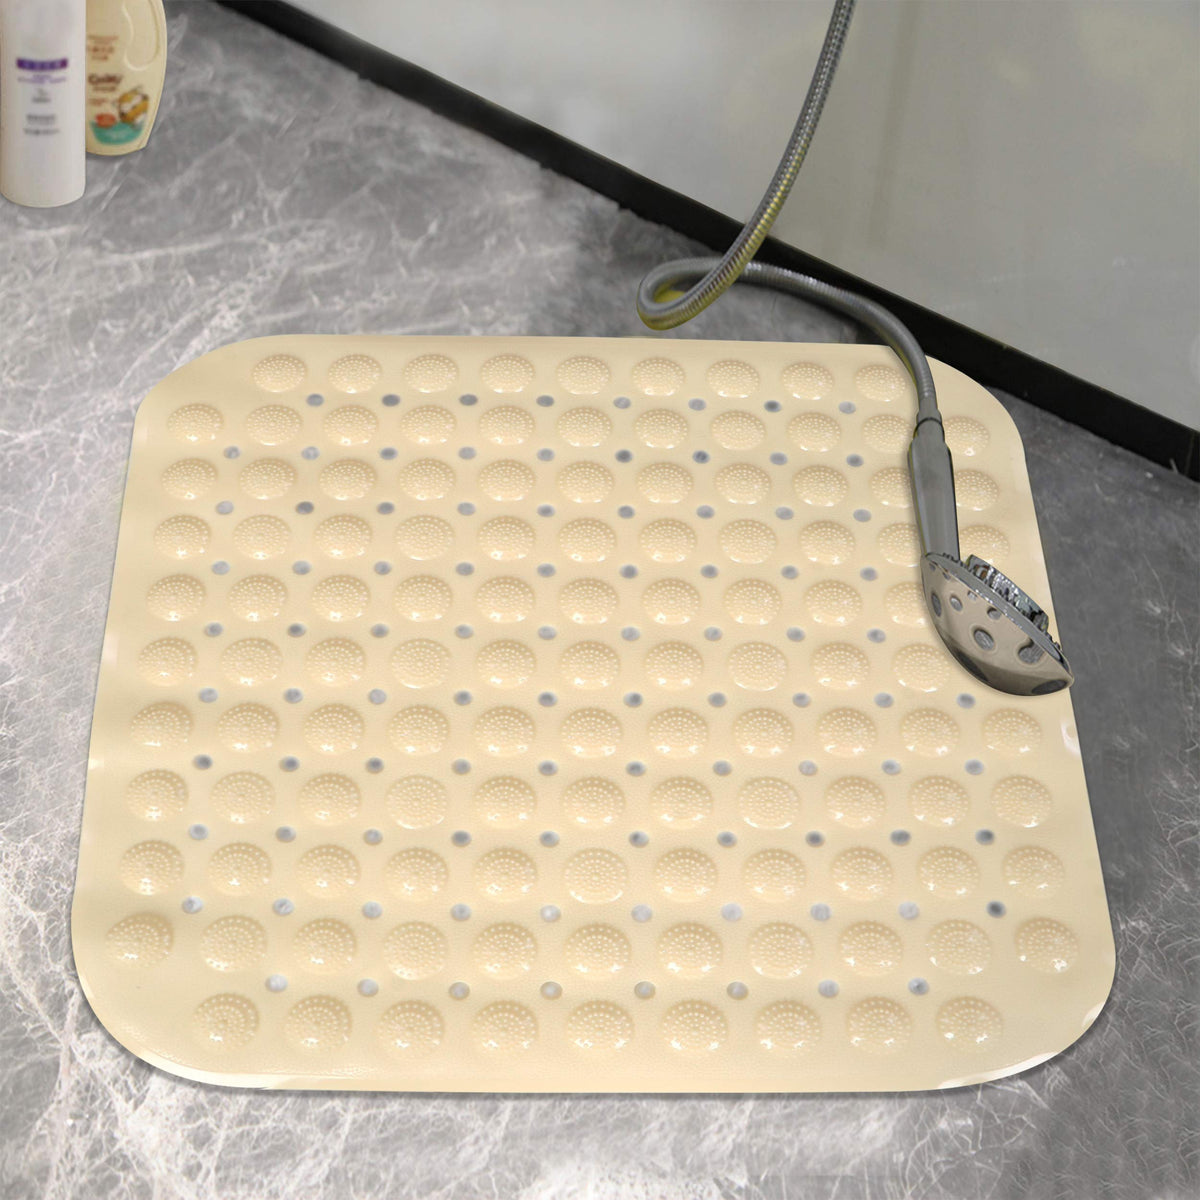 PVC Shower Mat Anti-Slip with Massage Acupressure Points, 48x48 cm, Beige